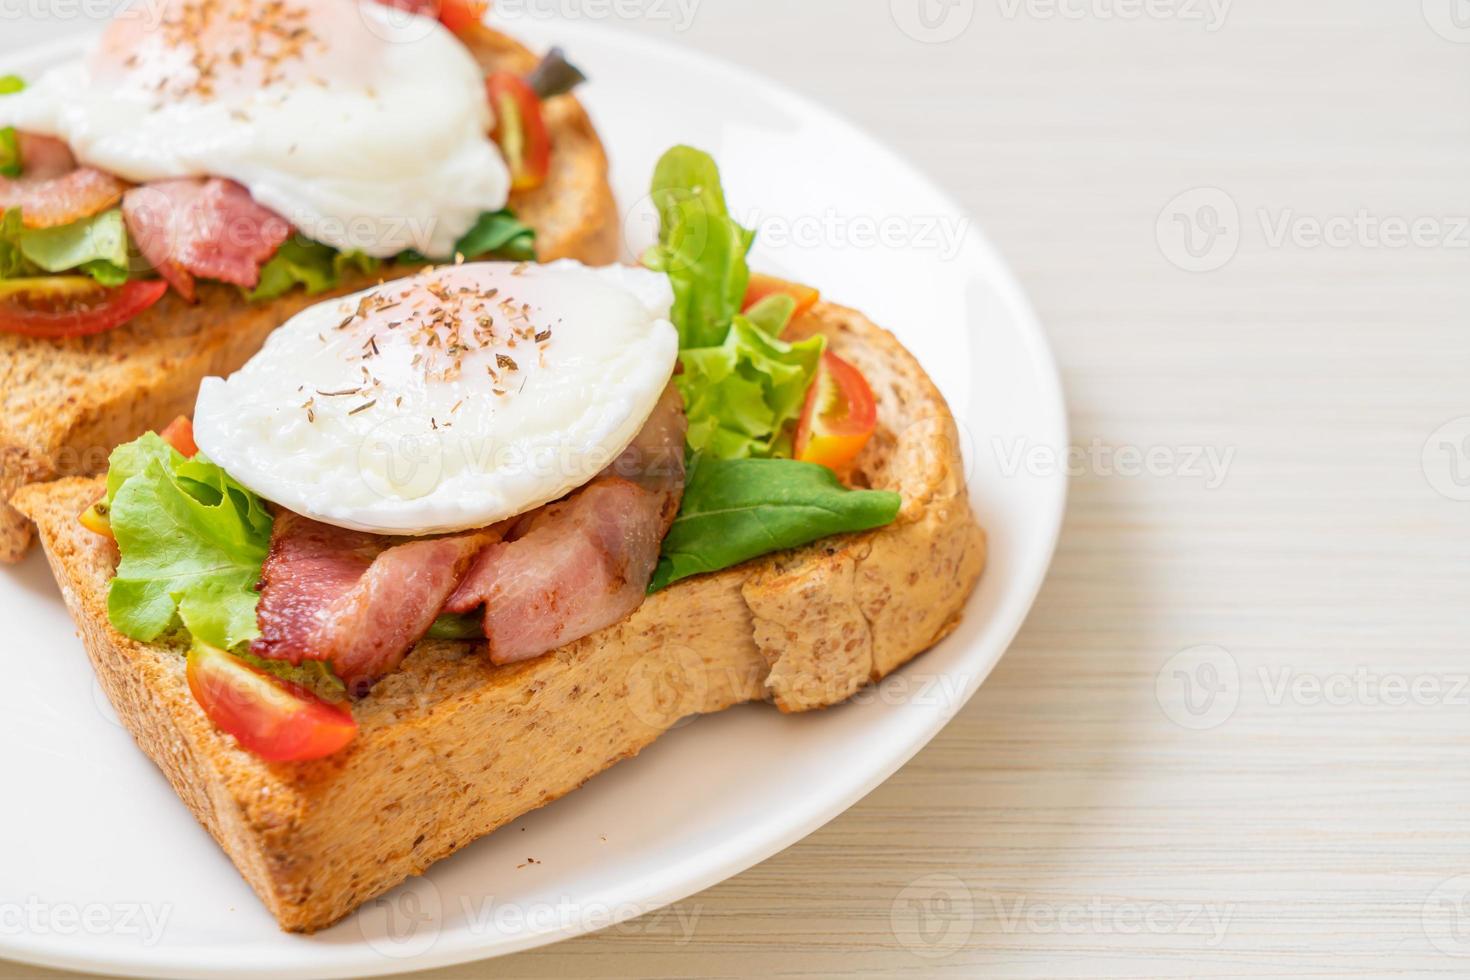 pão integral torrado com vegetais, bacon e ovo ou ovo benedict, no café da manhã foto